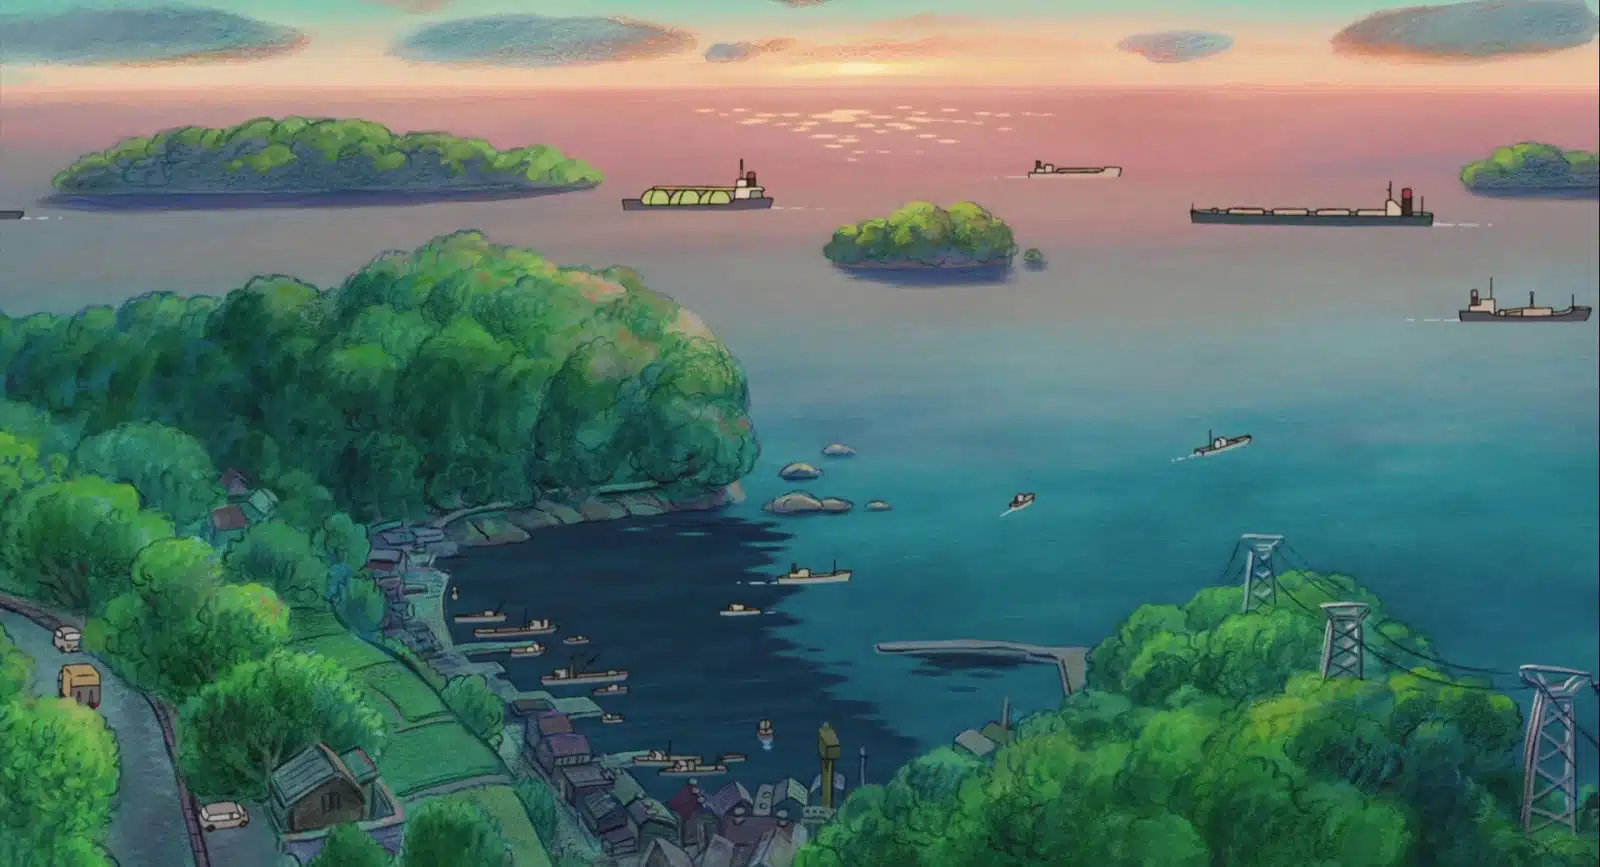 Ponyo película de animación de Studio Ghibli. Paisajes de estilo manga.